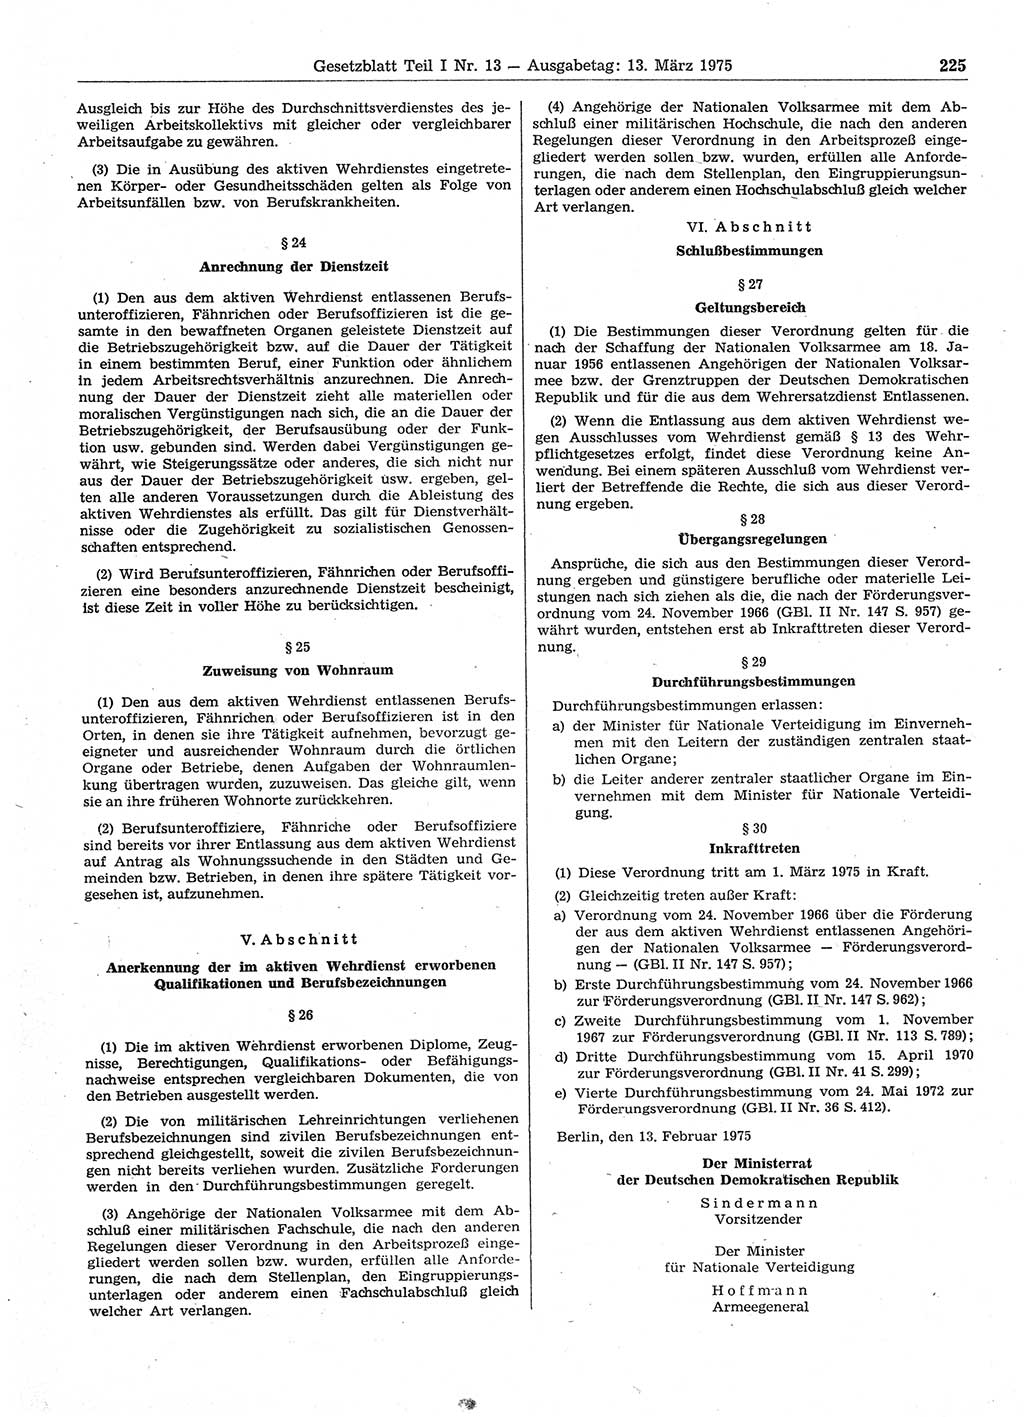 Gesetzblatt (GBl.) der Deutschen Demokratischen Republik (DDR) Teil Ⅰ 1975, Seite 225 (GBl. DDR Ⅰ 1975, S. 225)